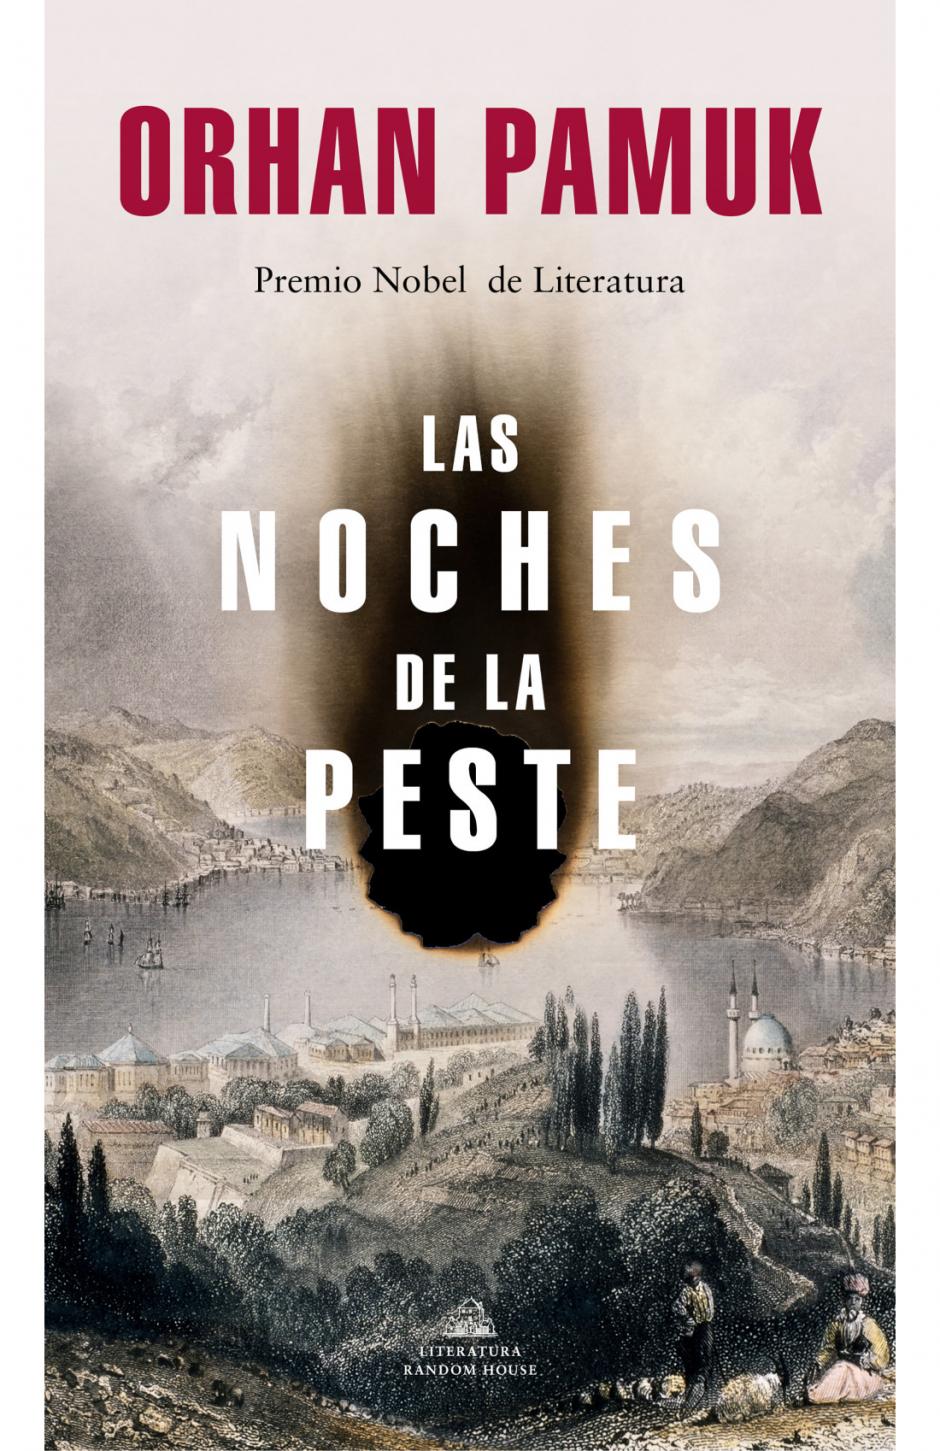 'Las noches de la peste', la nueva novela del escritor turco Orhan Pamuk